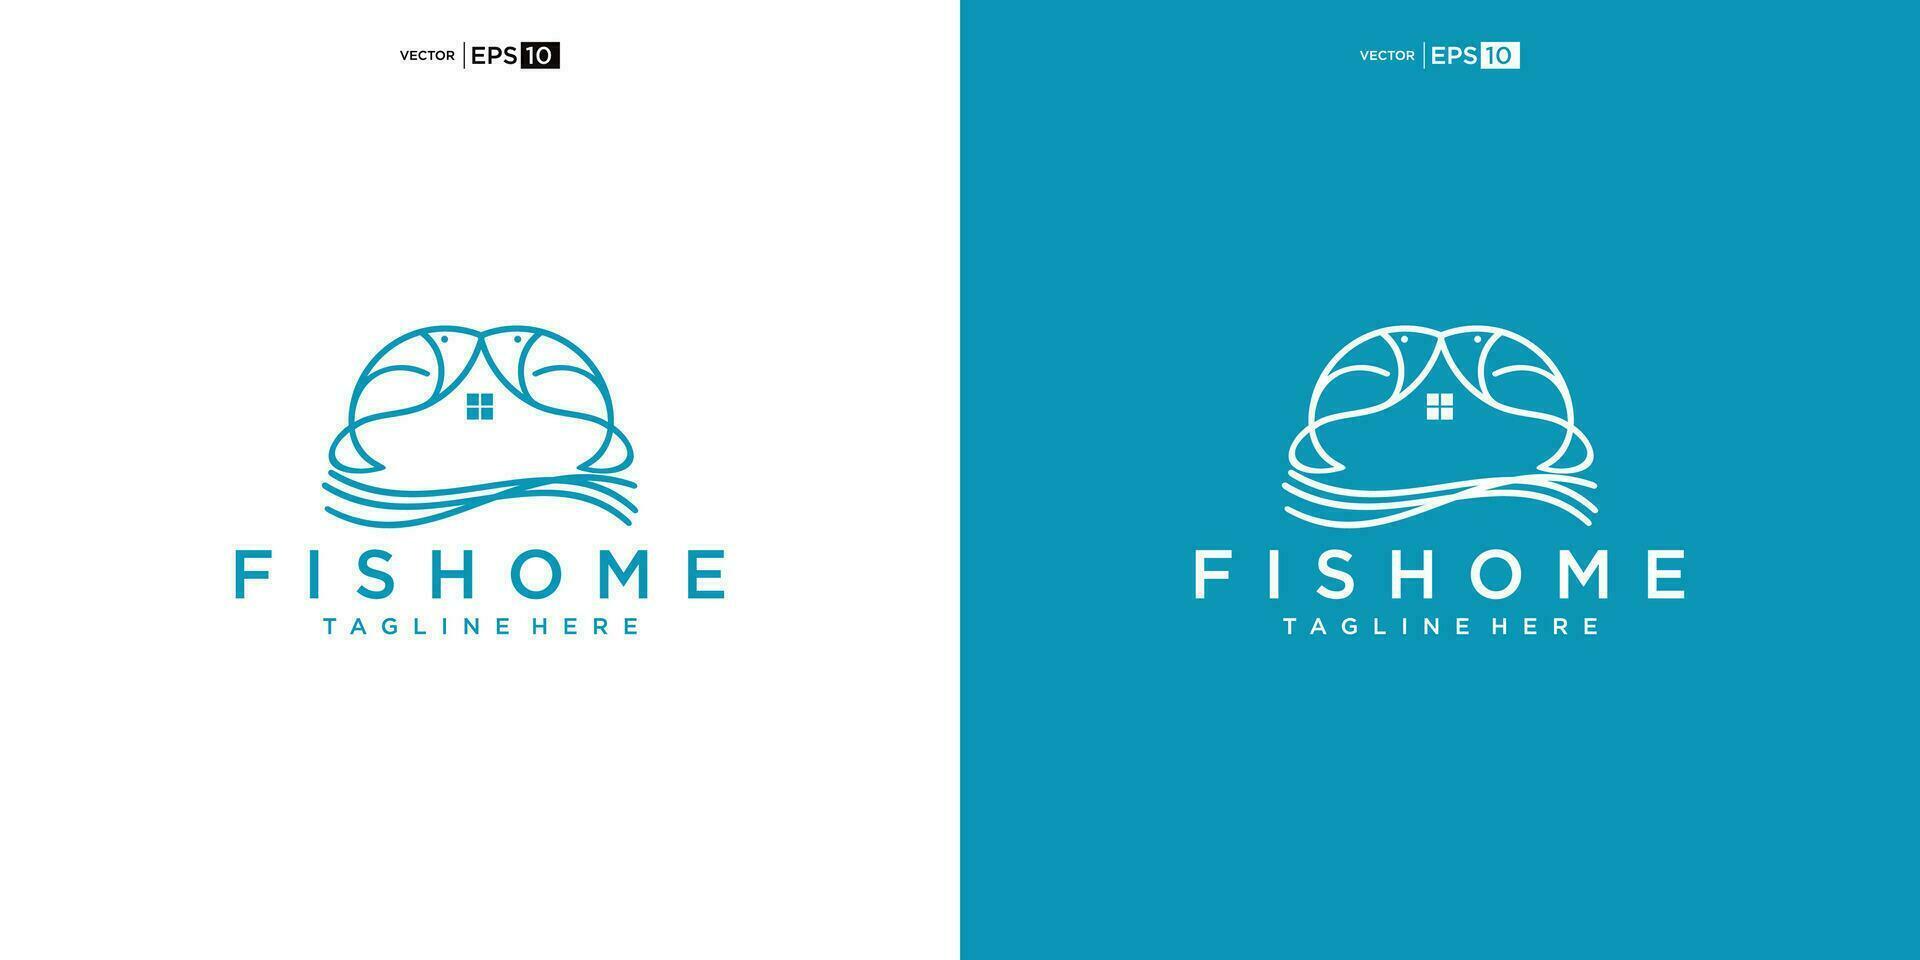 pescado con casa para hogar real inmuebles residencial hipoteca Departamento edificio logo diseño vector